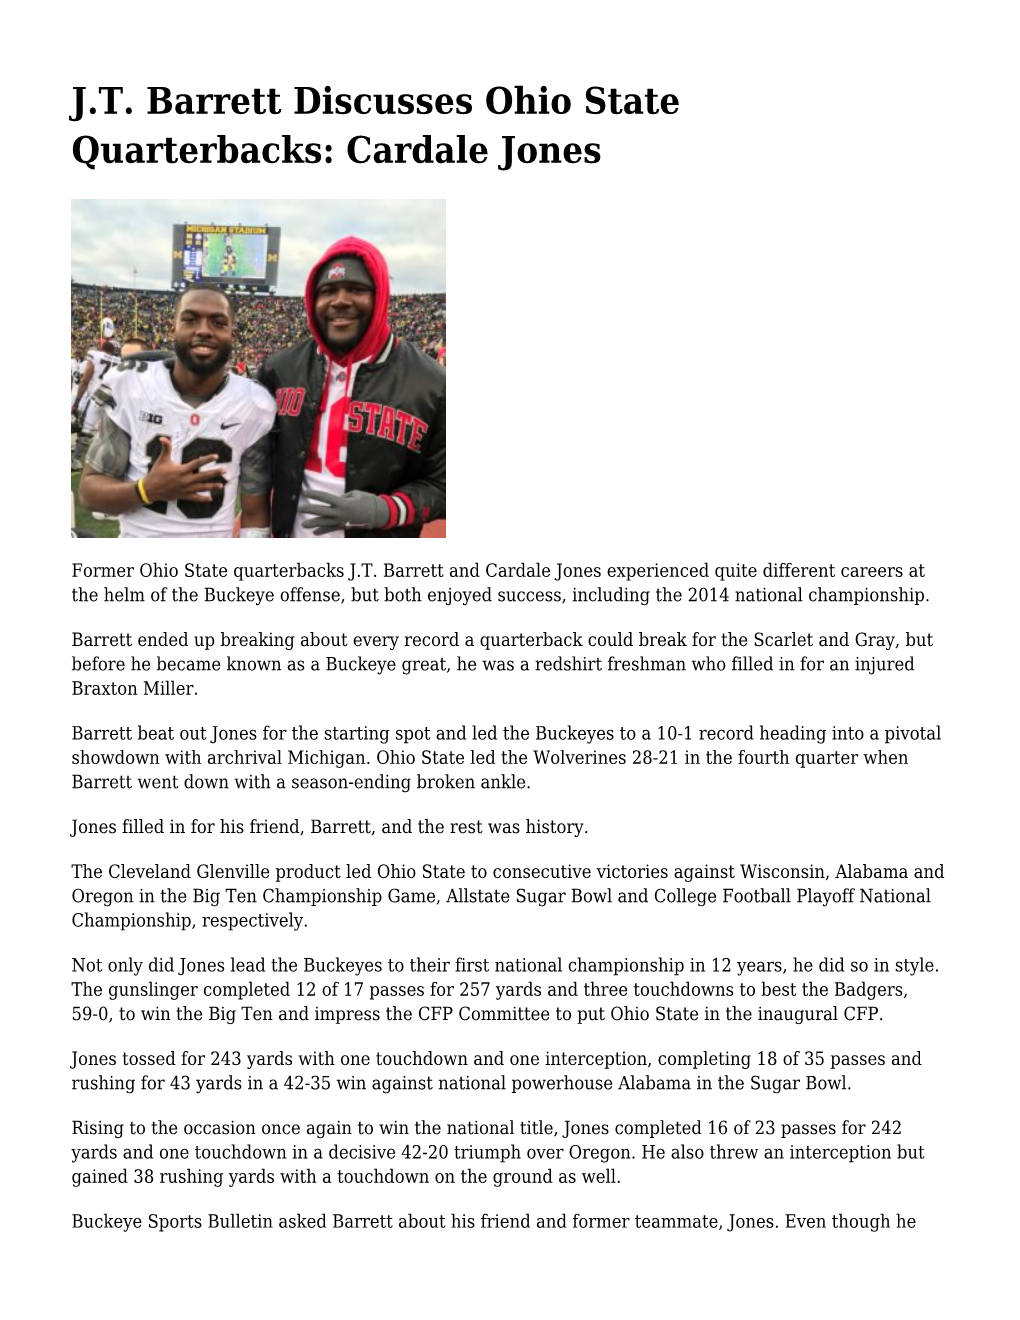 J.T. Barrett Discusses Ohio State Quarterbacks: Cardale Jones